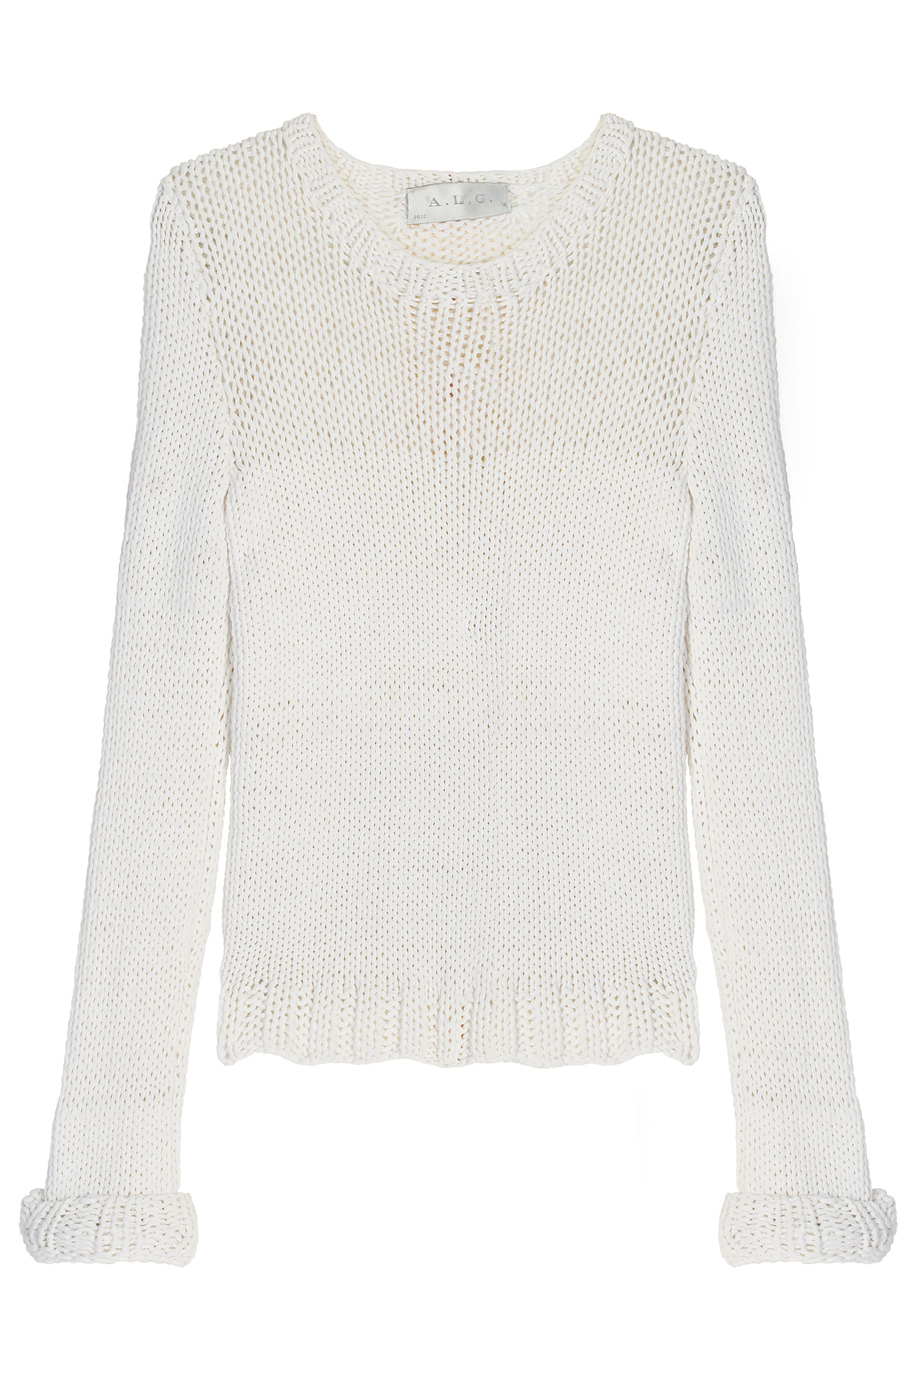 A.L.C. Lara Knit Sweater in White - Lyst